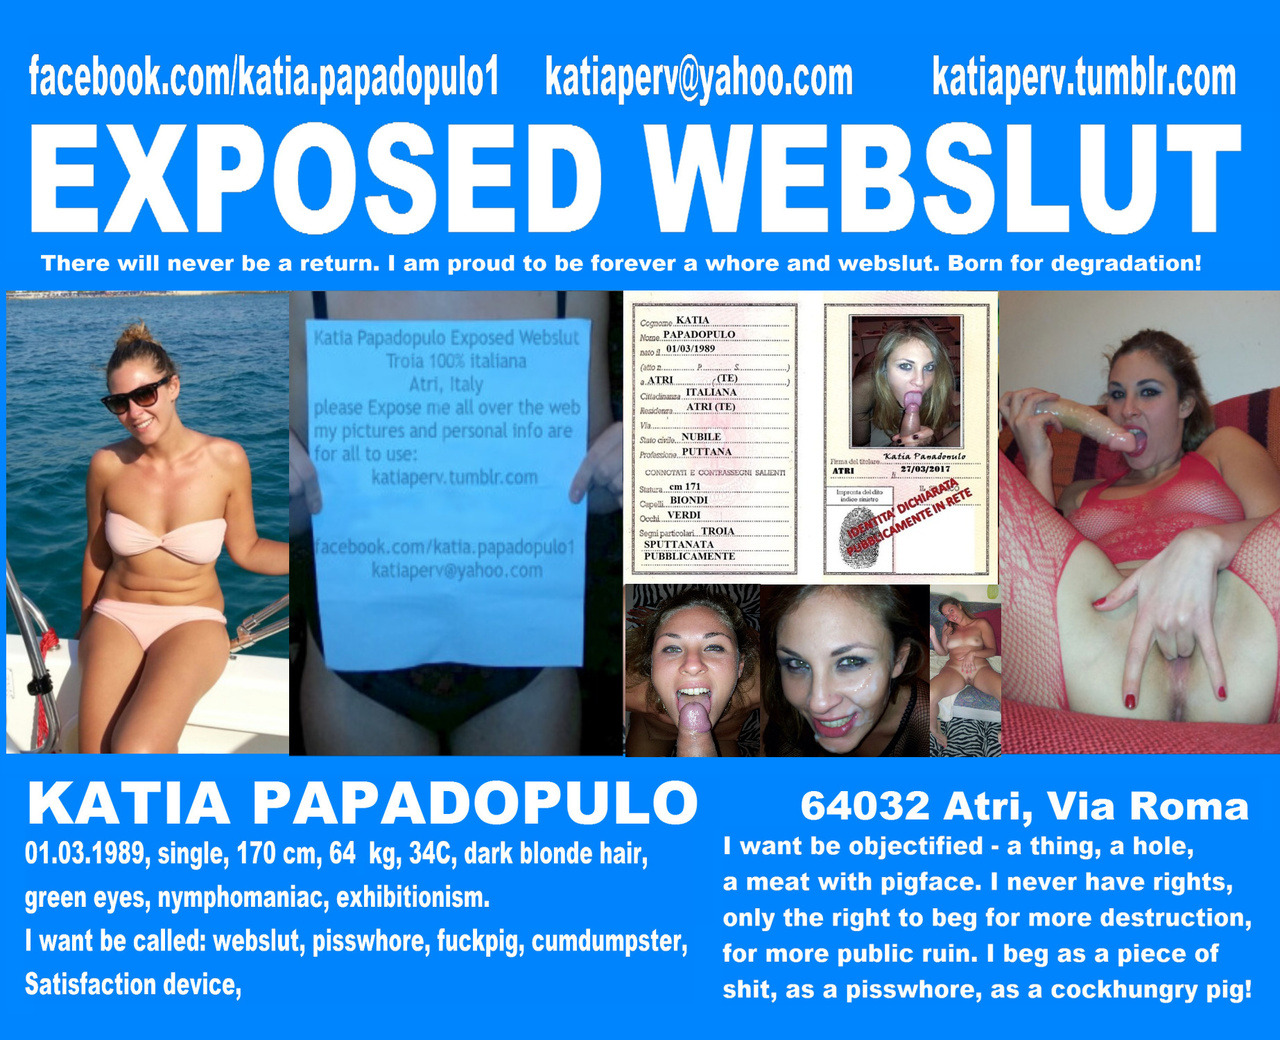 Katia Papadopulo Exposed Webslut _______________________